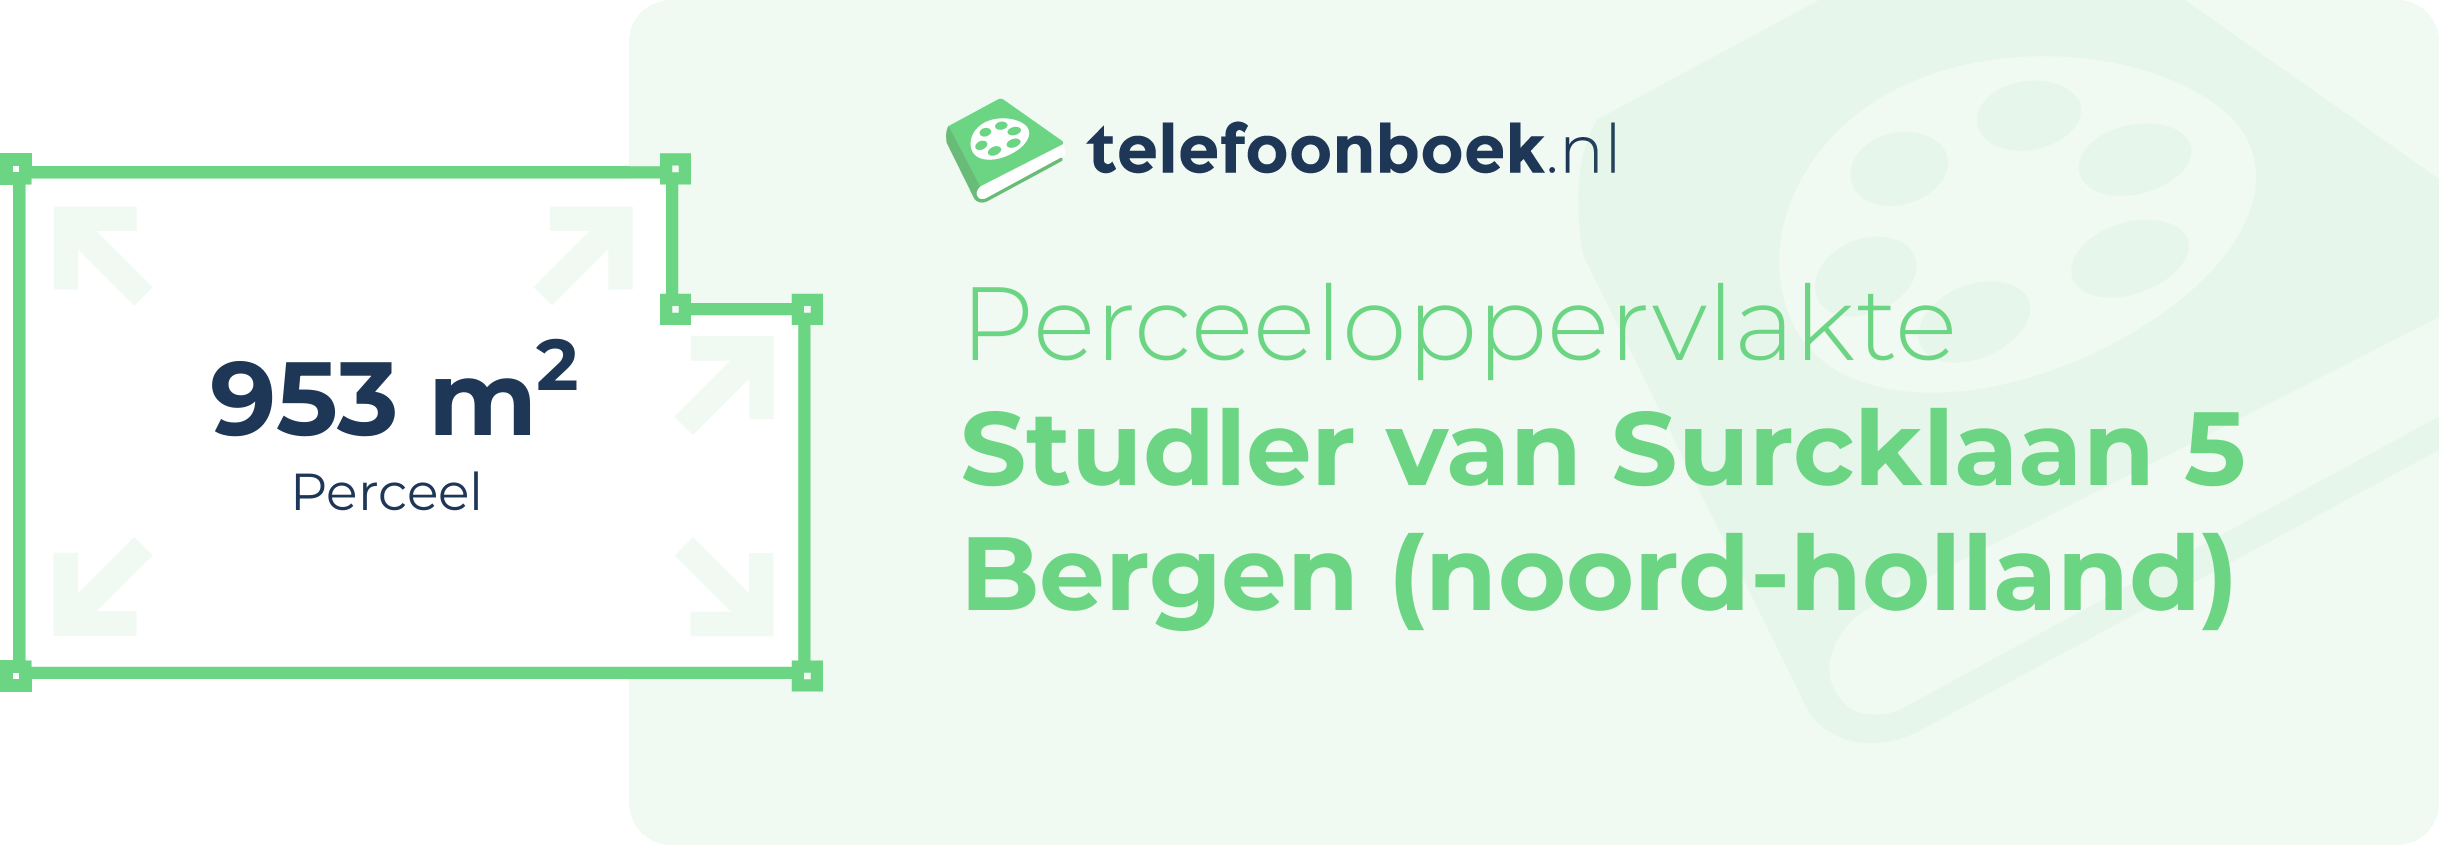 Perceeloppervlakte Studler Van Surcklaan 5 Bergen (Noord-Holland)